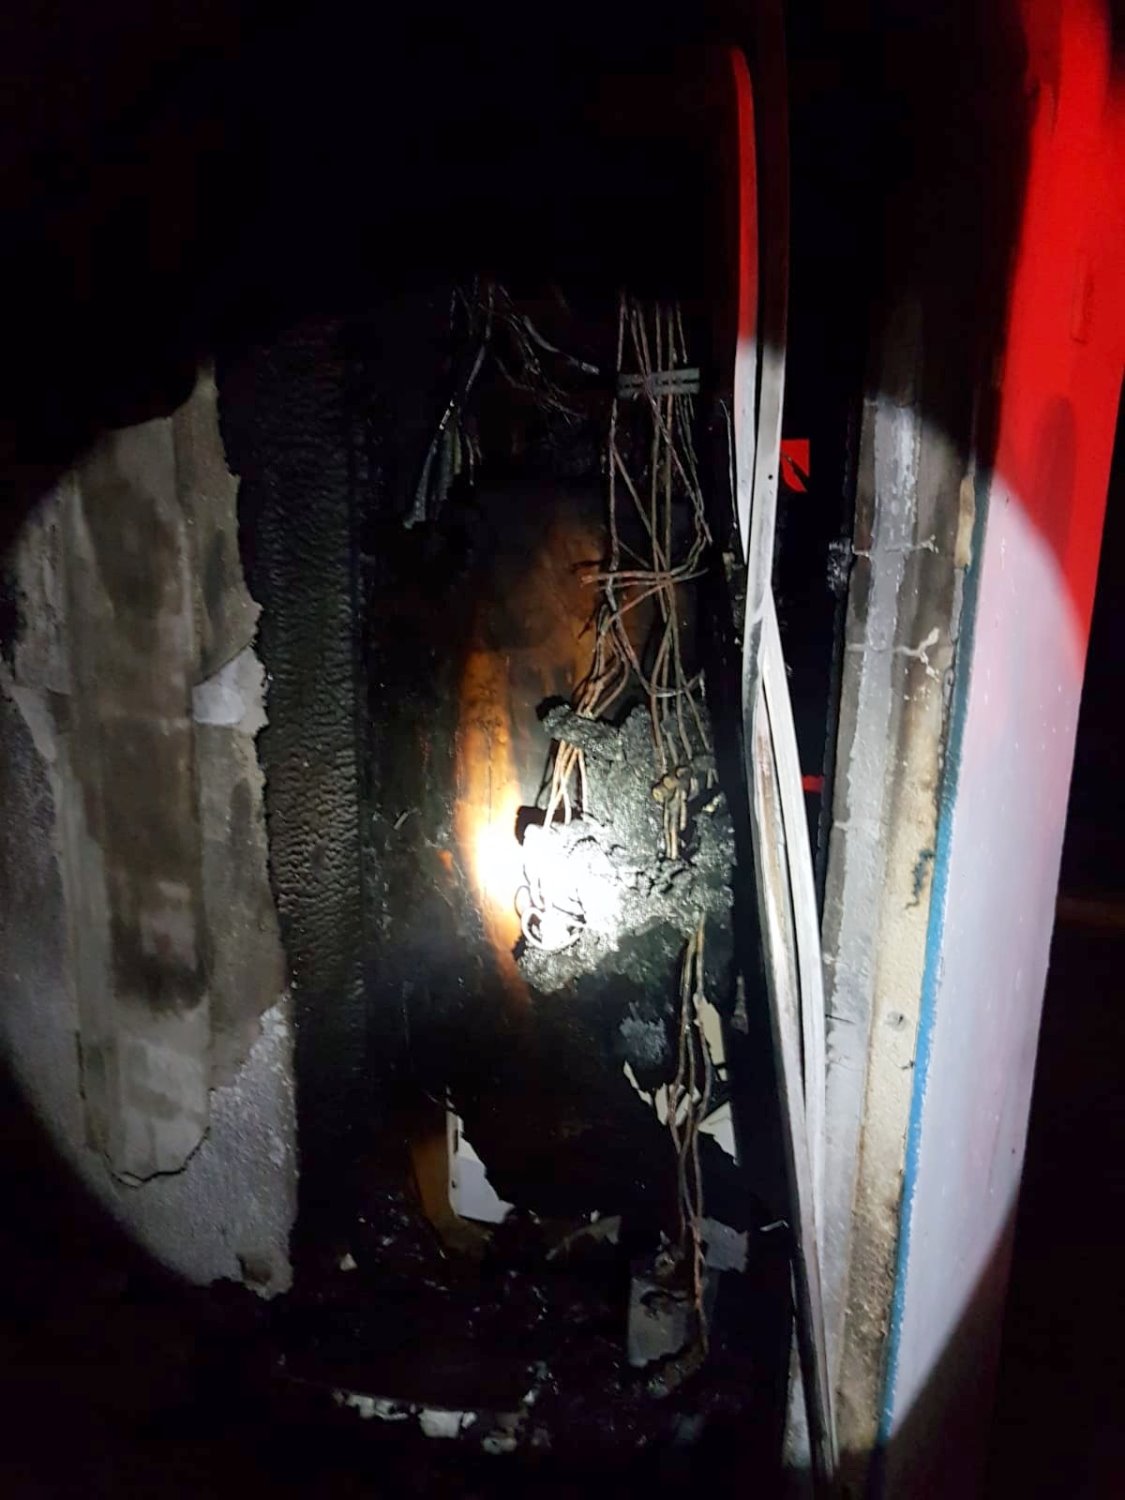 ארון חשמל הוצת ברחוב אברבנאל בשכונה י"א. צילום: דוברות כיבוי והצלה נגב 